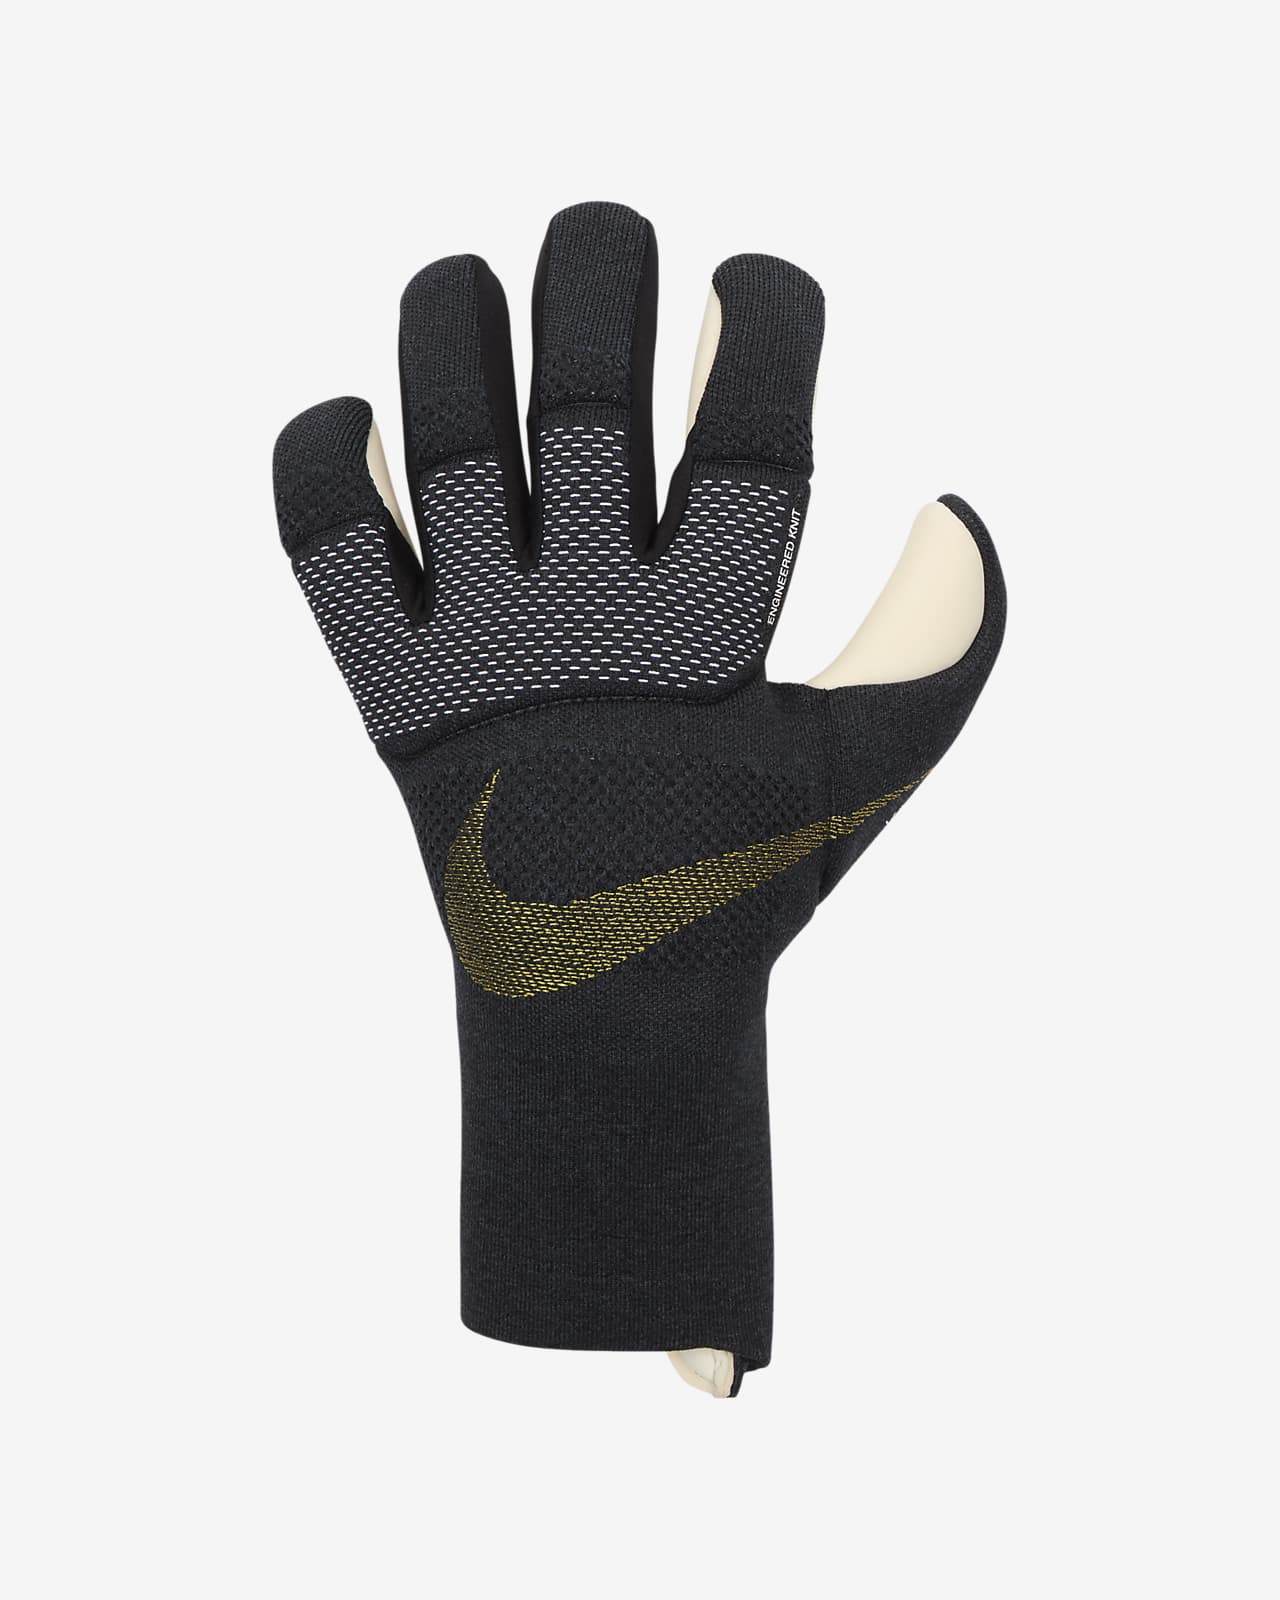 Nike Vapor Dynamic Fit Goalkeeper Gloves.